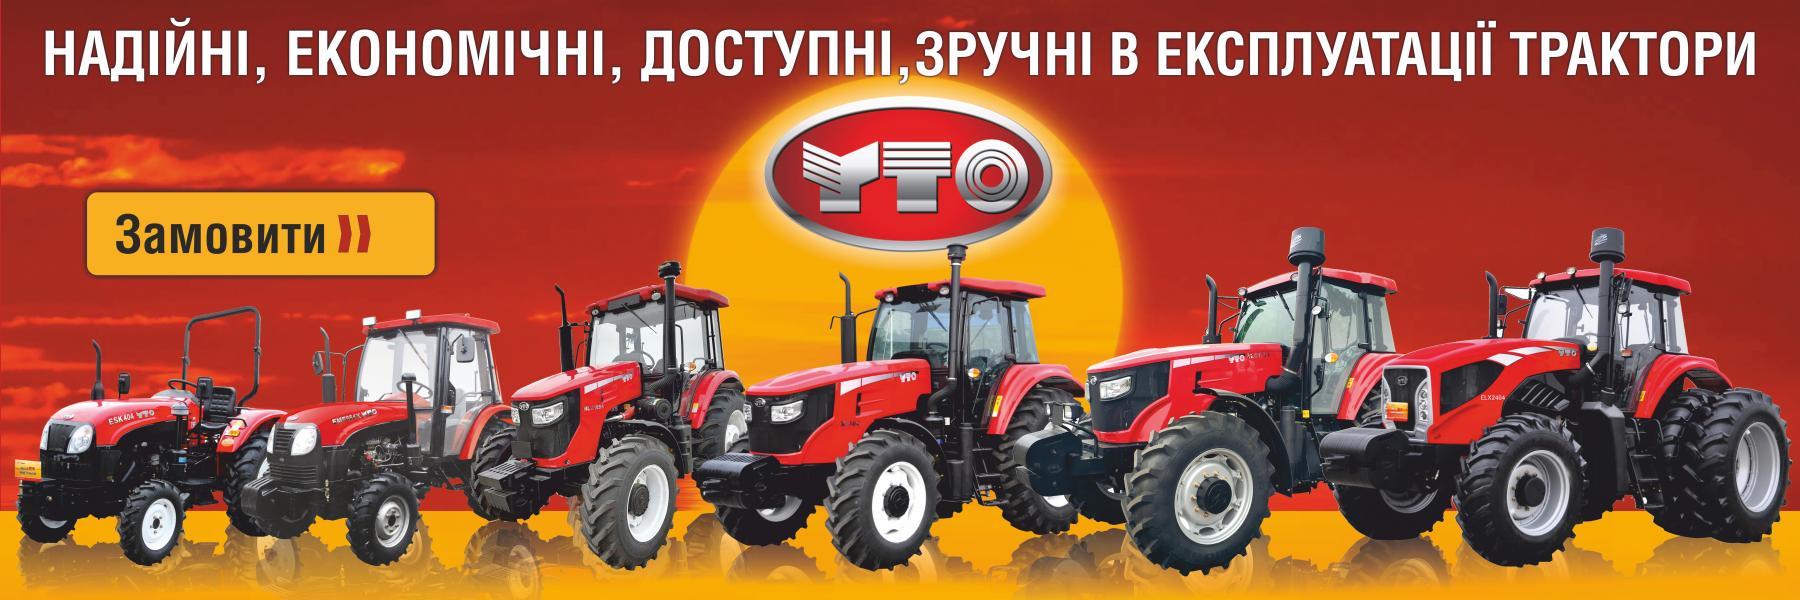 Продажа тракторов YTO|ЮТО|МТЗ,Продажа комбайнов YTO|ЮТО, купить Трактор YTO|ЮТО|МТЗ, купить Трактор YTO|ЮТО|МТЗ, новый или б/у, купить трактор YTO|ЮТО, продажа YTO|ЮТО, продажа тракторов YTO|ЮТО,  дилер YTO|ЮТО в Украине